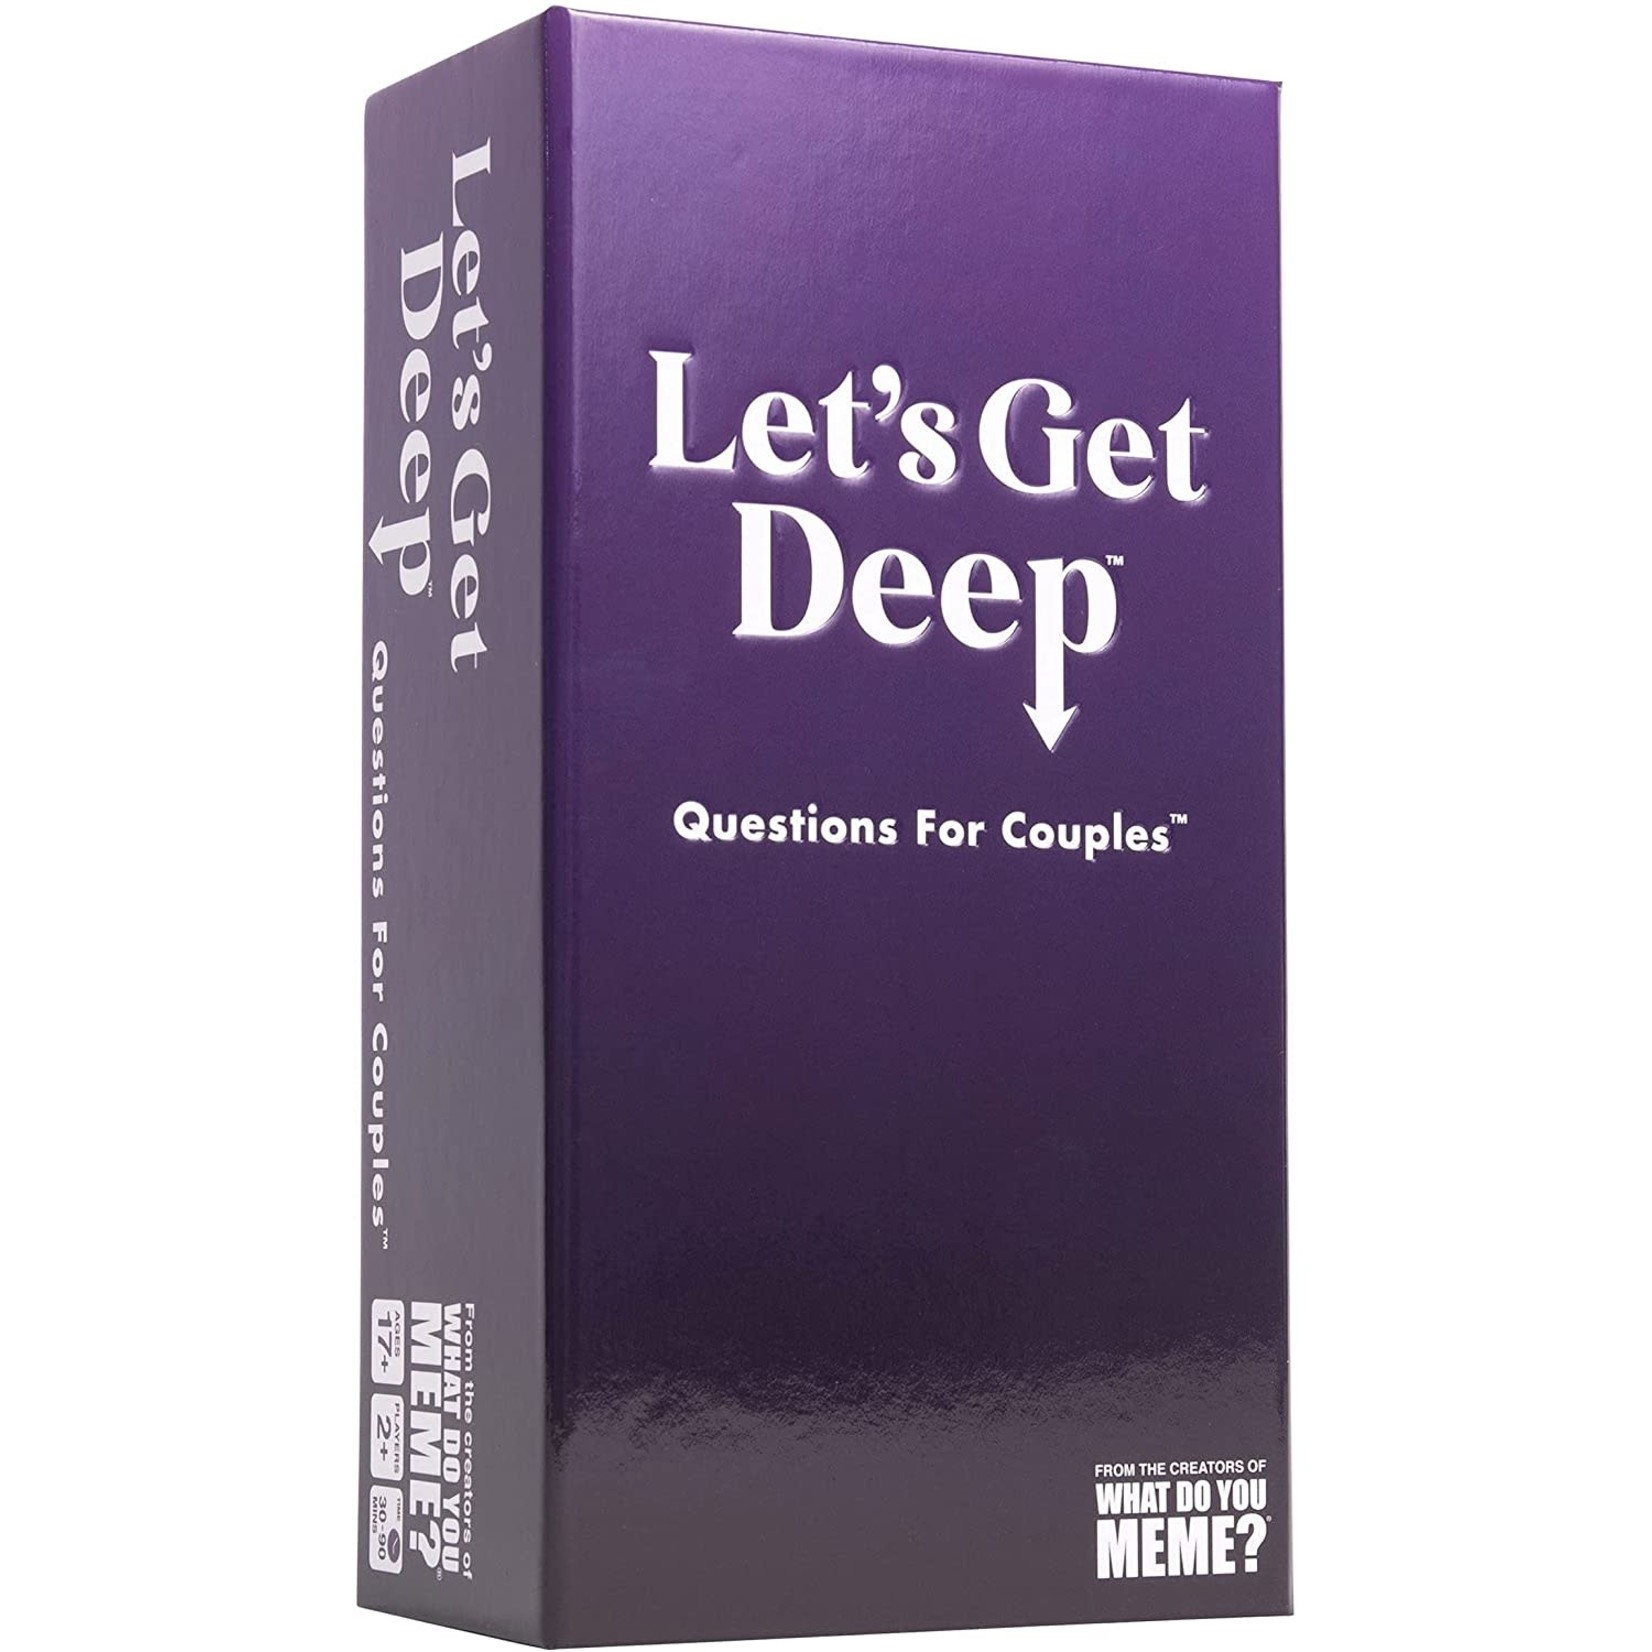 Let's Get Deep